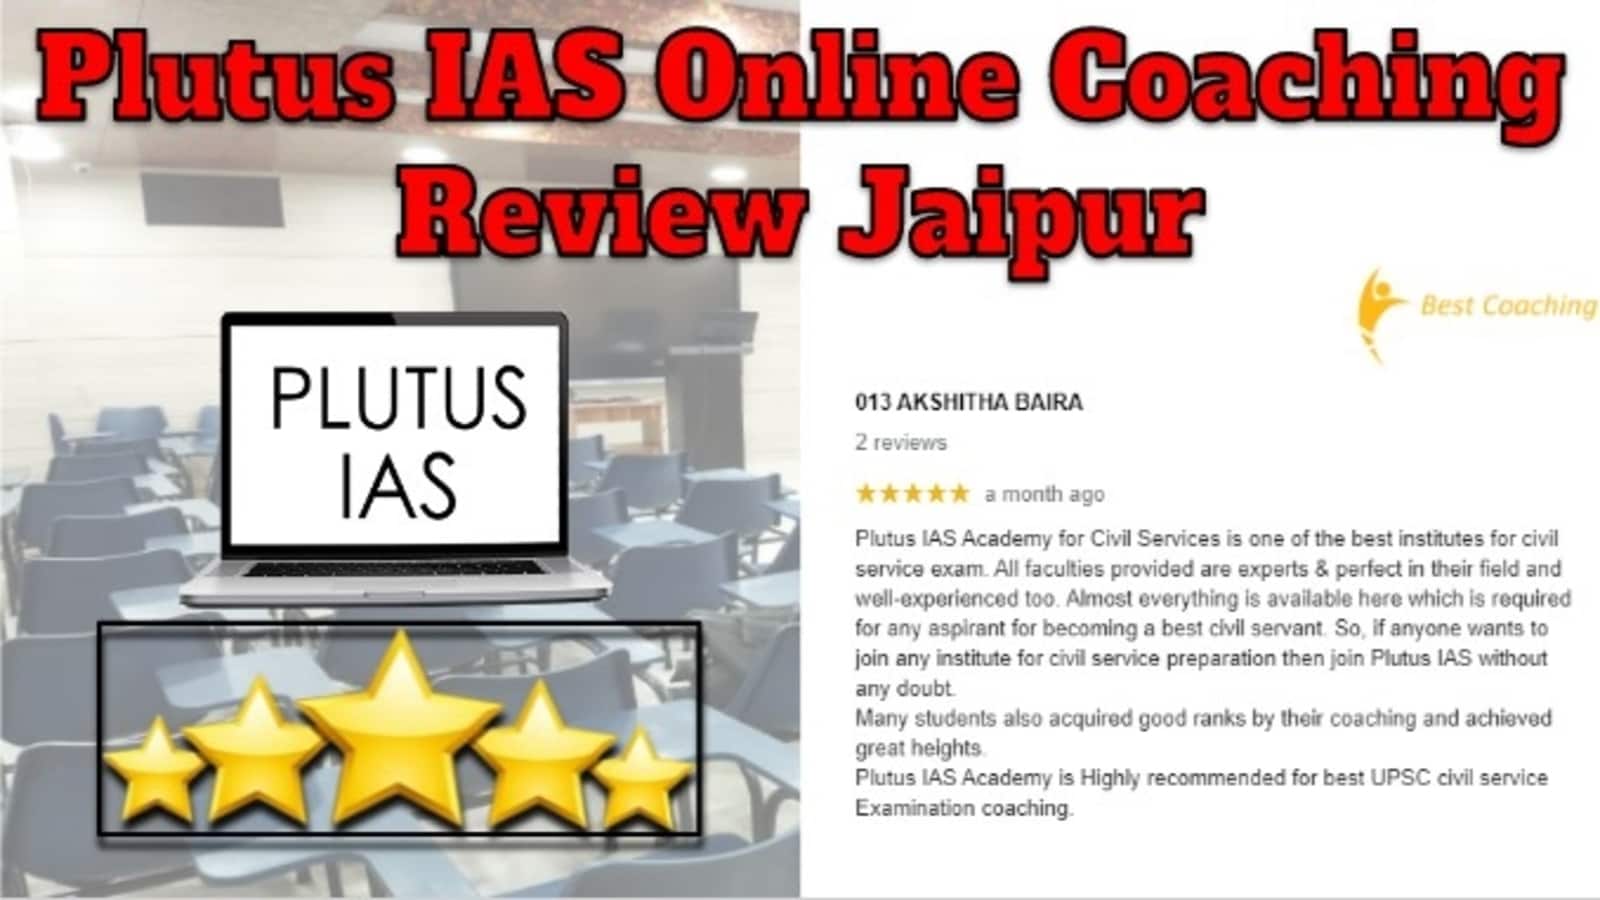 Plutus IAS Online Coaching Review Jaipur